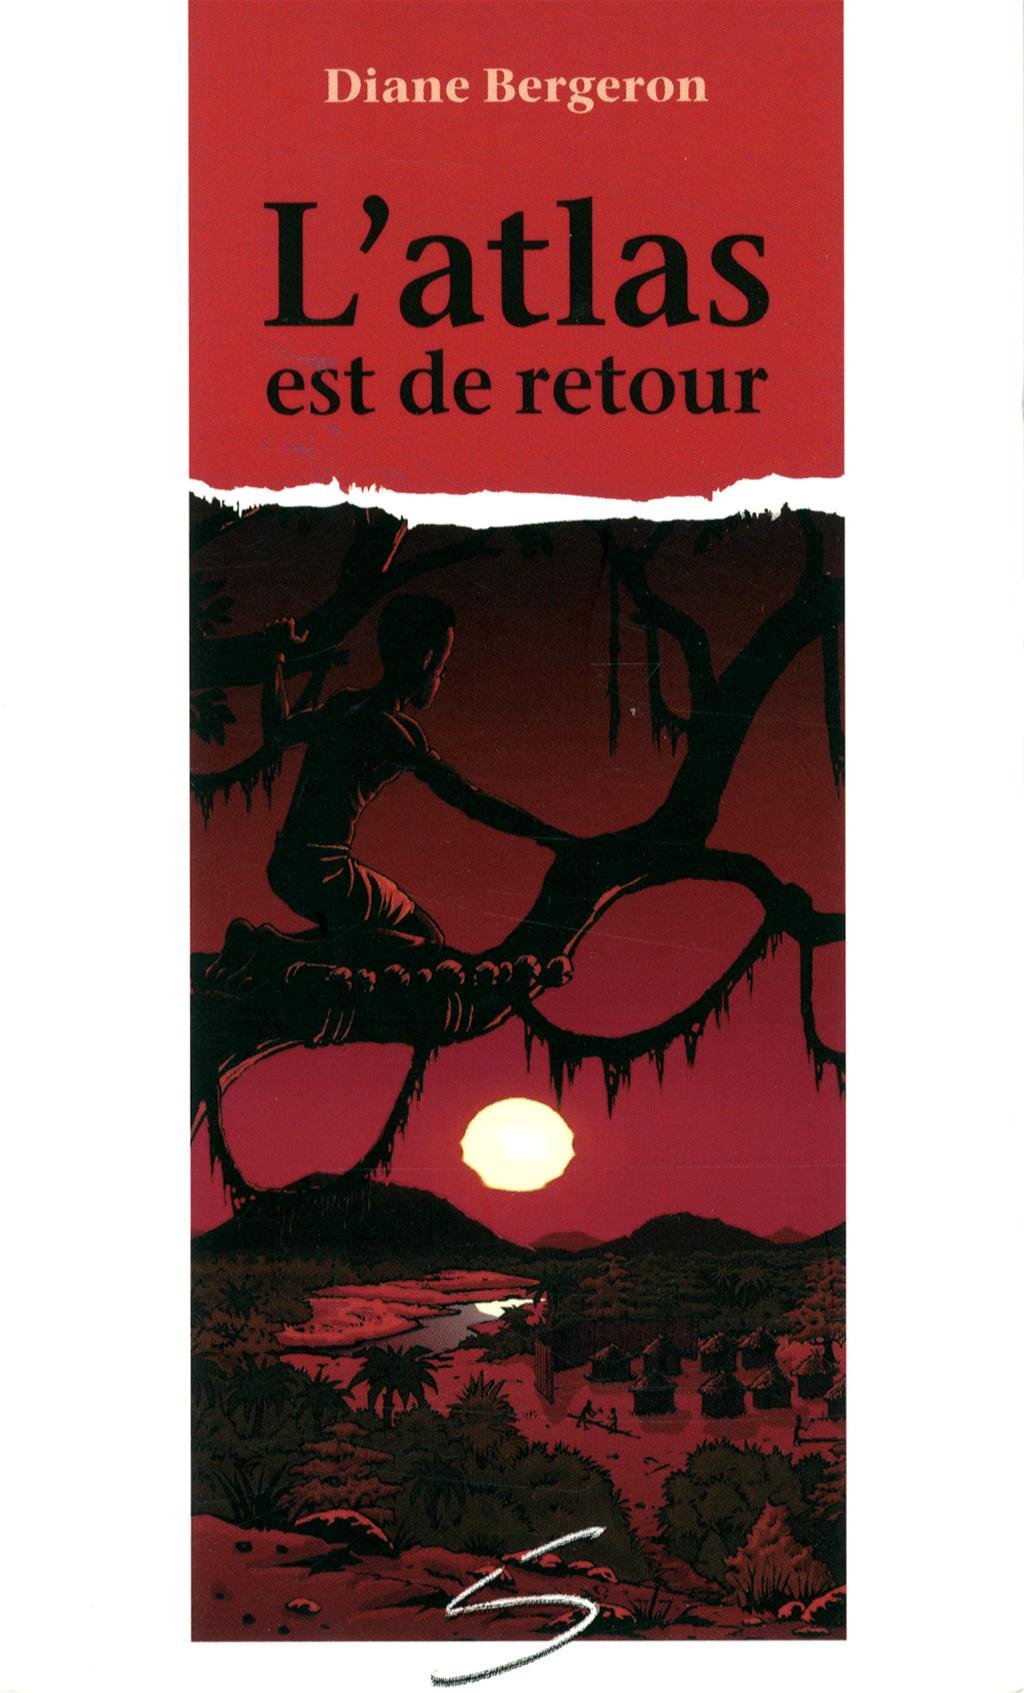 Livre ISBN 2896070907 Chat de gouttière # 33 : L'atlas  est de retour (Diane Bergeron)